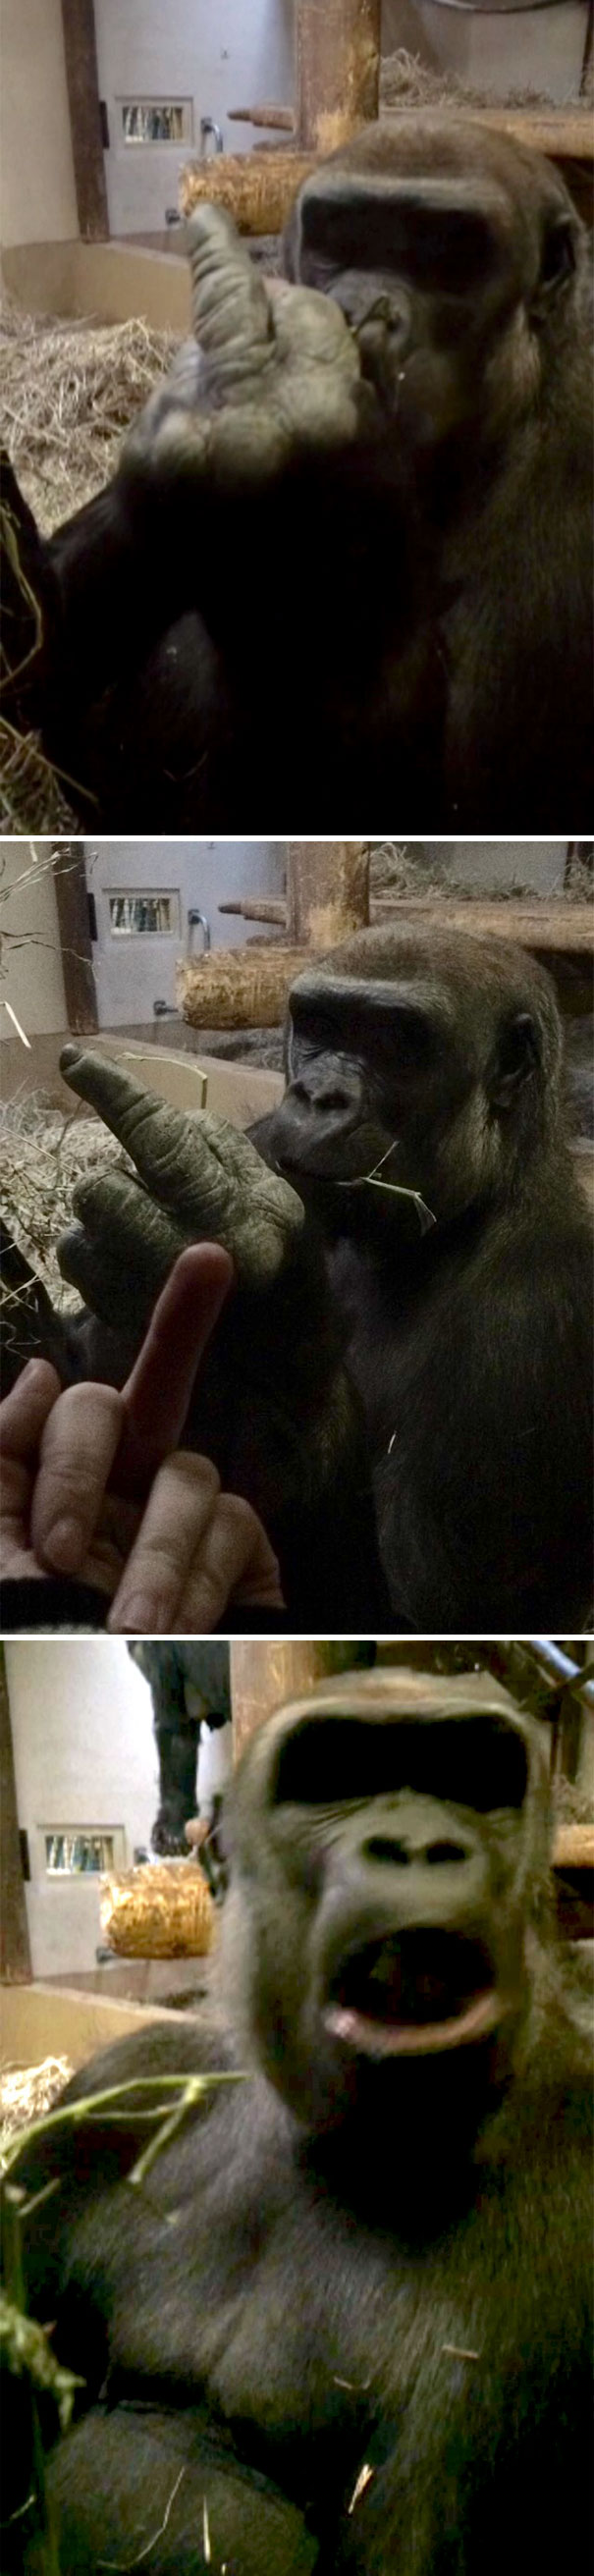 Hôm nay một con Gorilla đã giơ ngón tay thối vào mặt tôi, tôi giơ lại thì nó lại nổi đóa lên